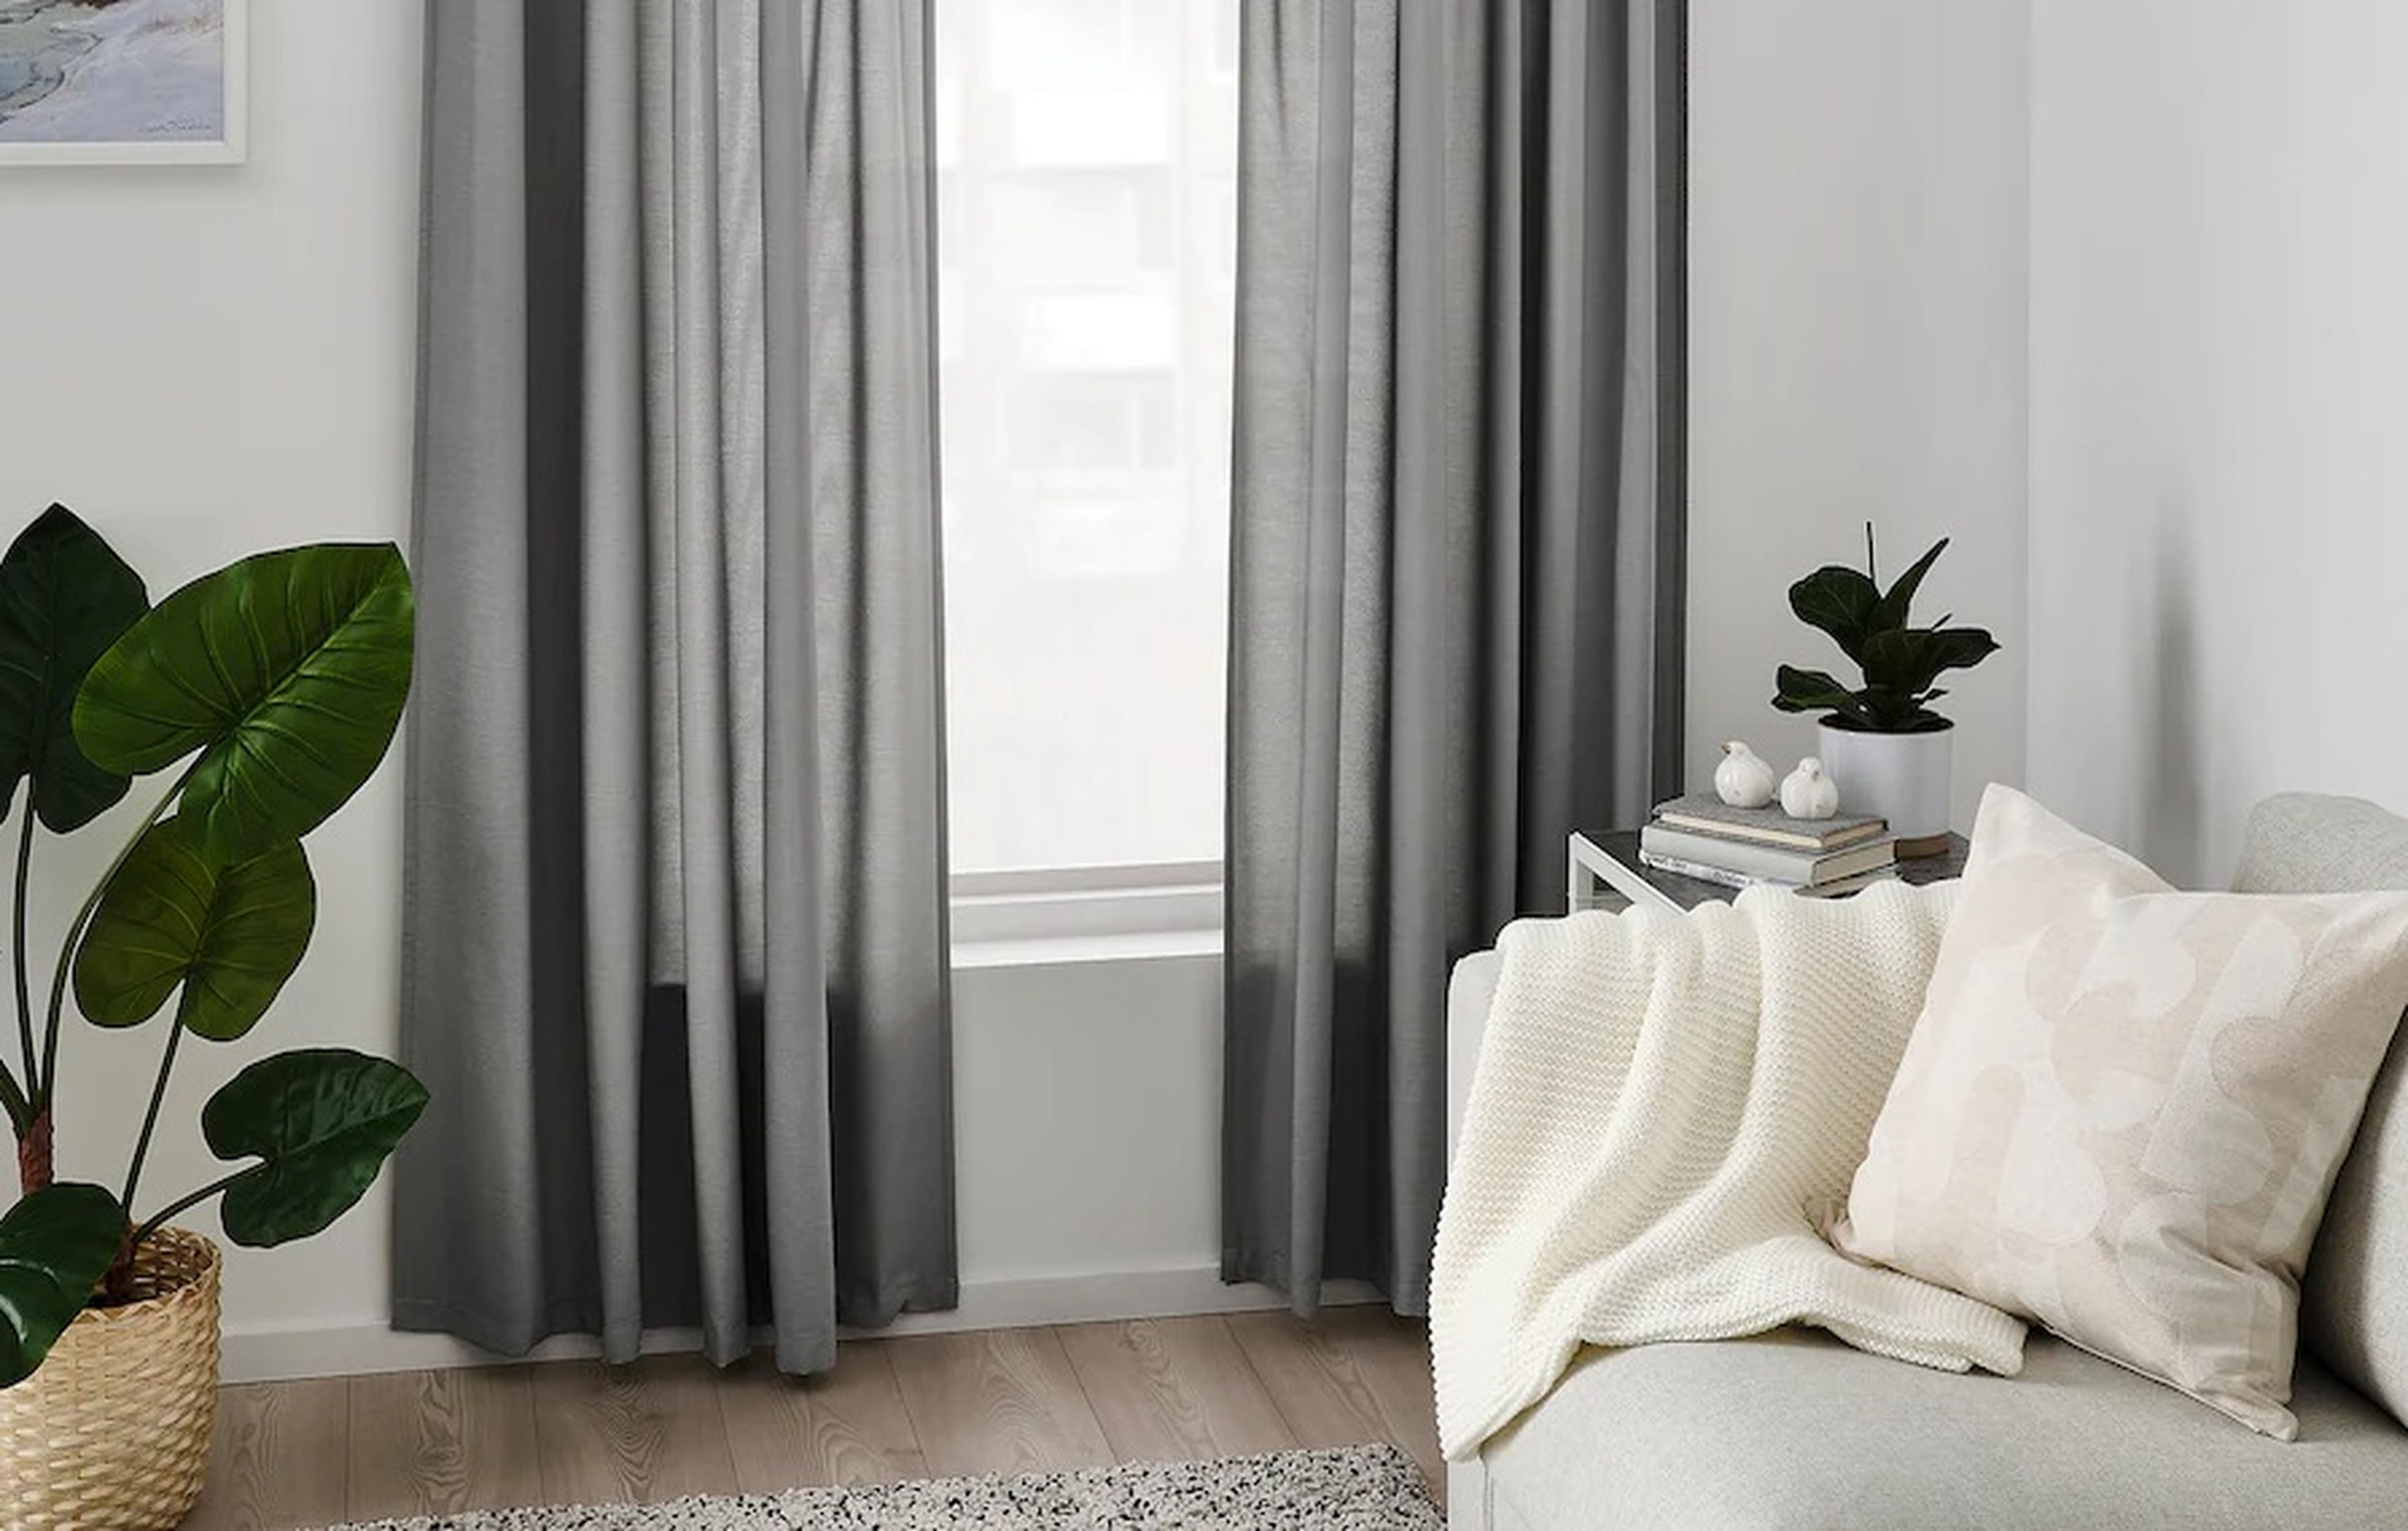 Ikea quiere poner solución a los vecinos molestos con unas cortinas que  absorben el ruido